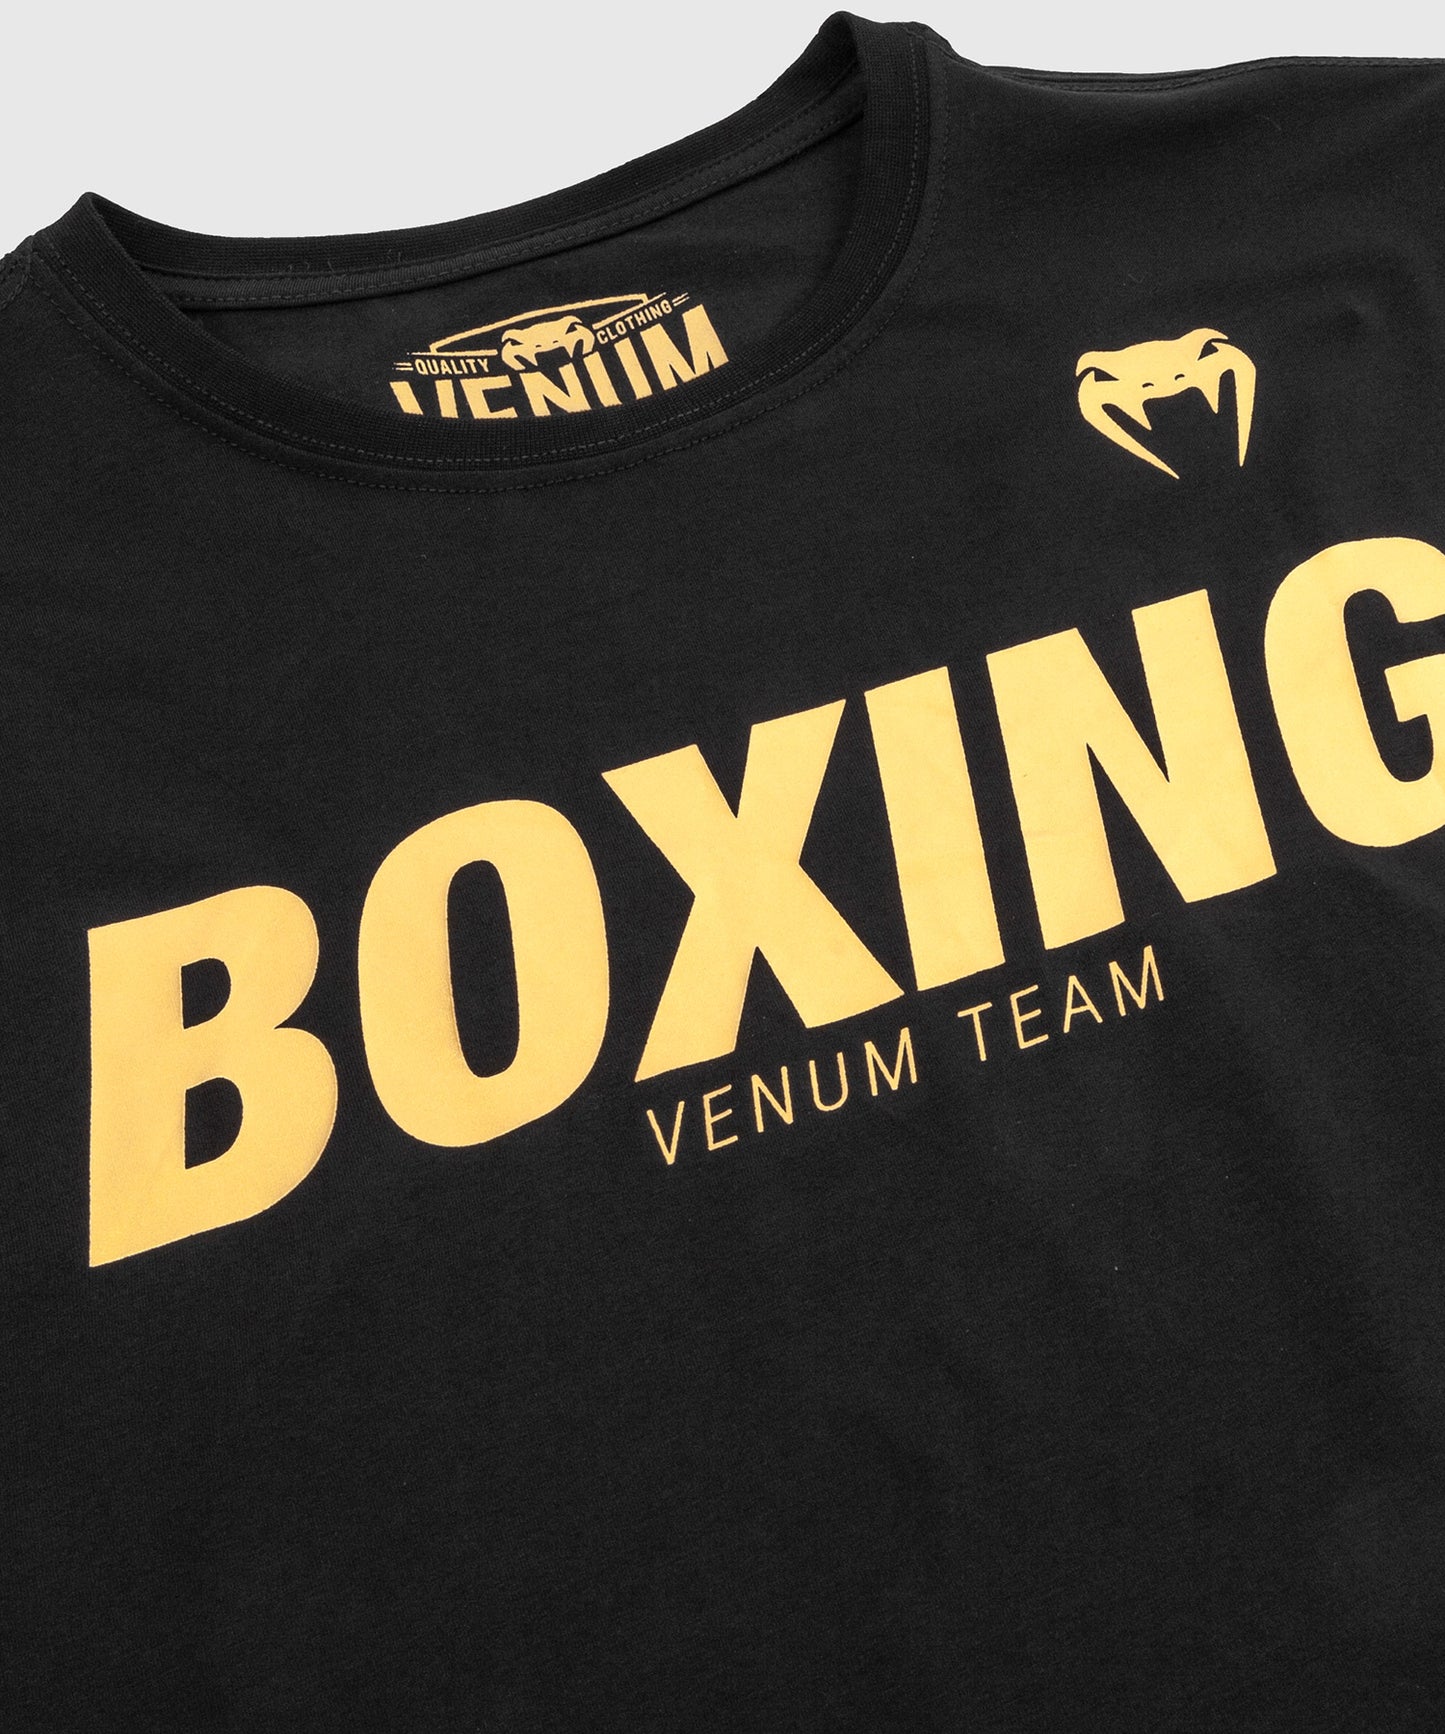 Camiseta Boxing VT de Venum - Negro/Oro